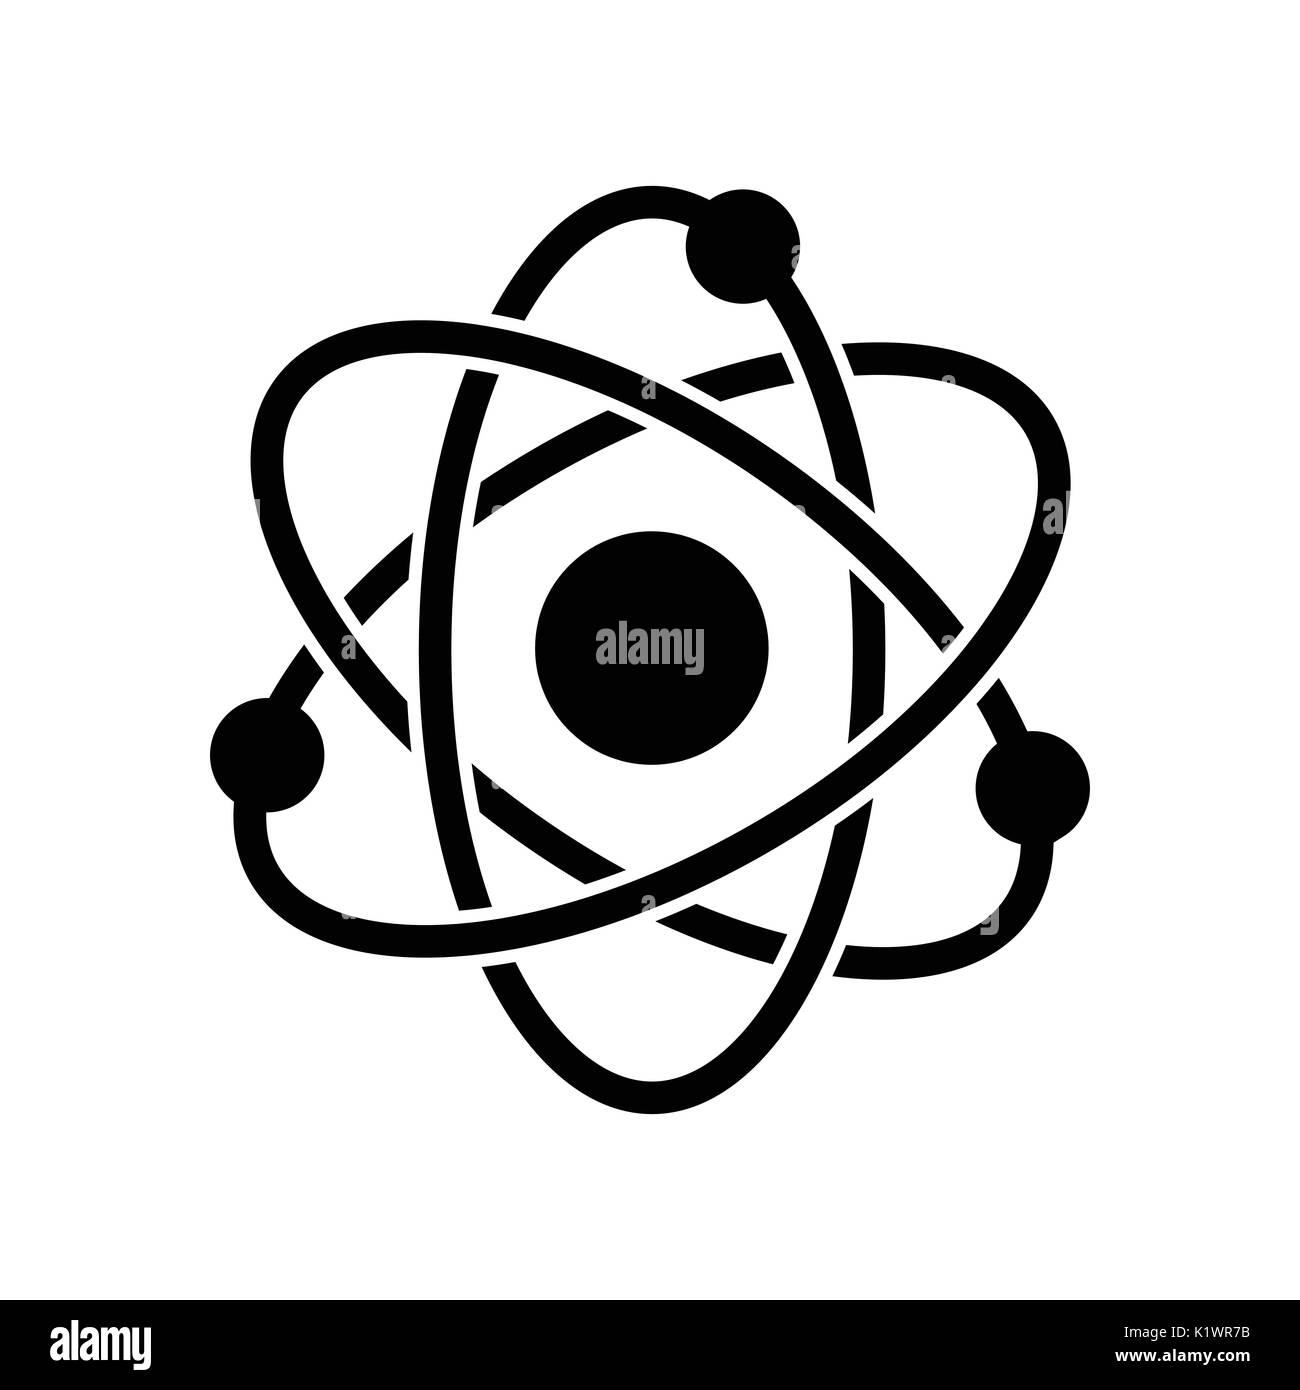 L'icône, symbole de l'atome, sur fond blanc. Vector design iconique. Illustration de Vecteur